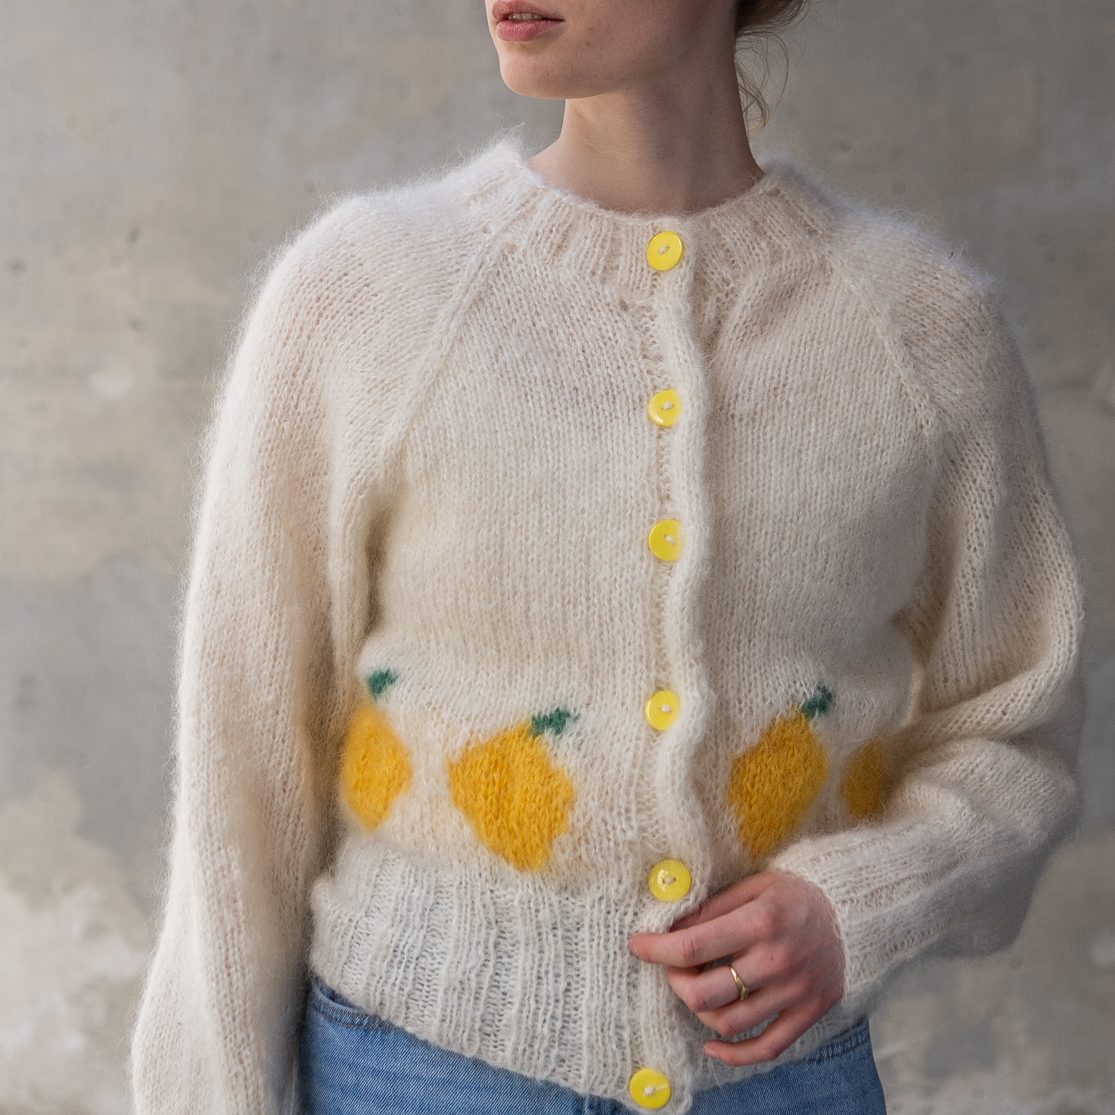  - Fruity cardigan | Womens cardigan | Knit pattern - by HipKnitShop - 21/07/2021